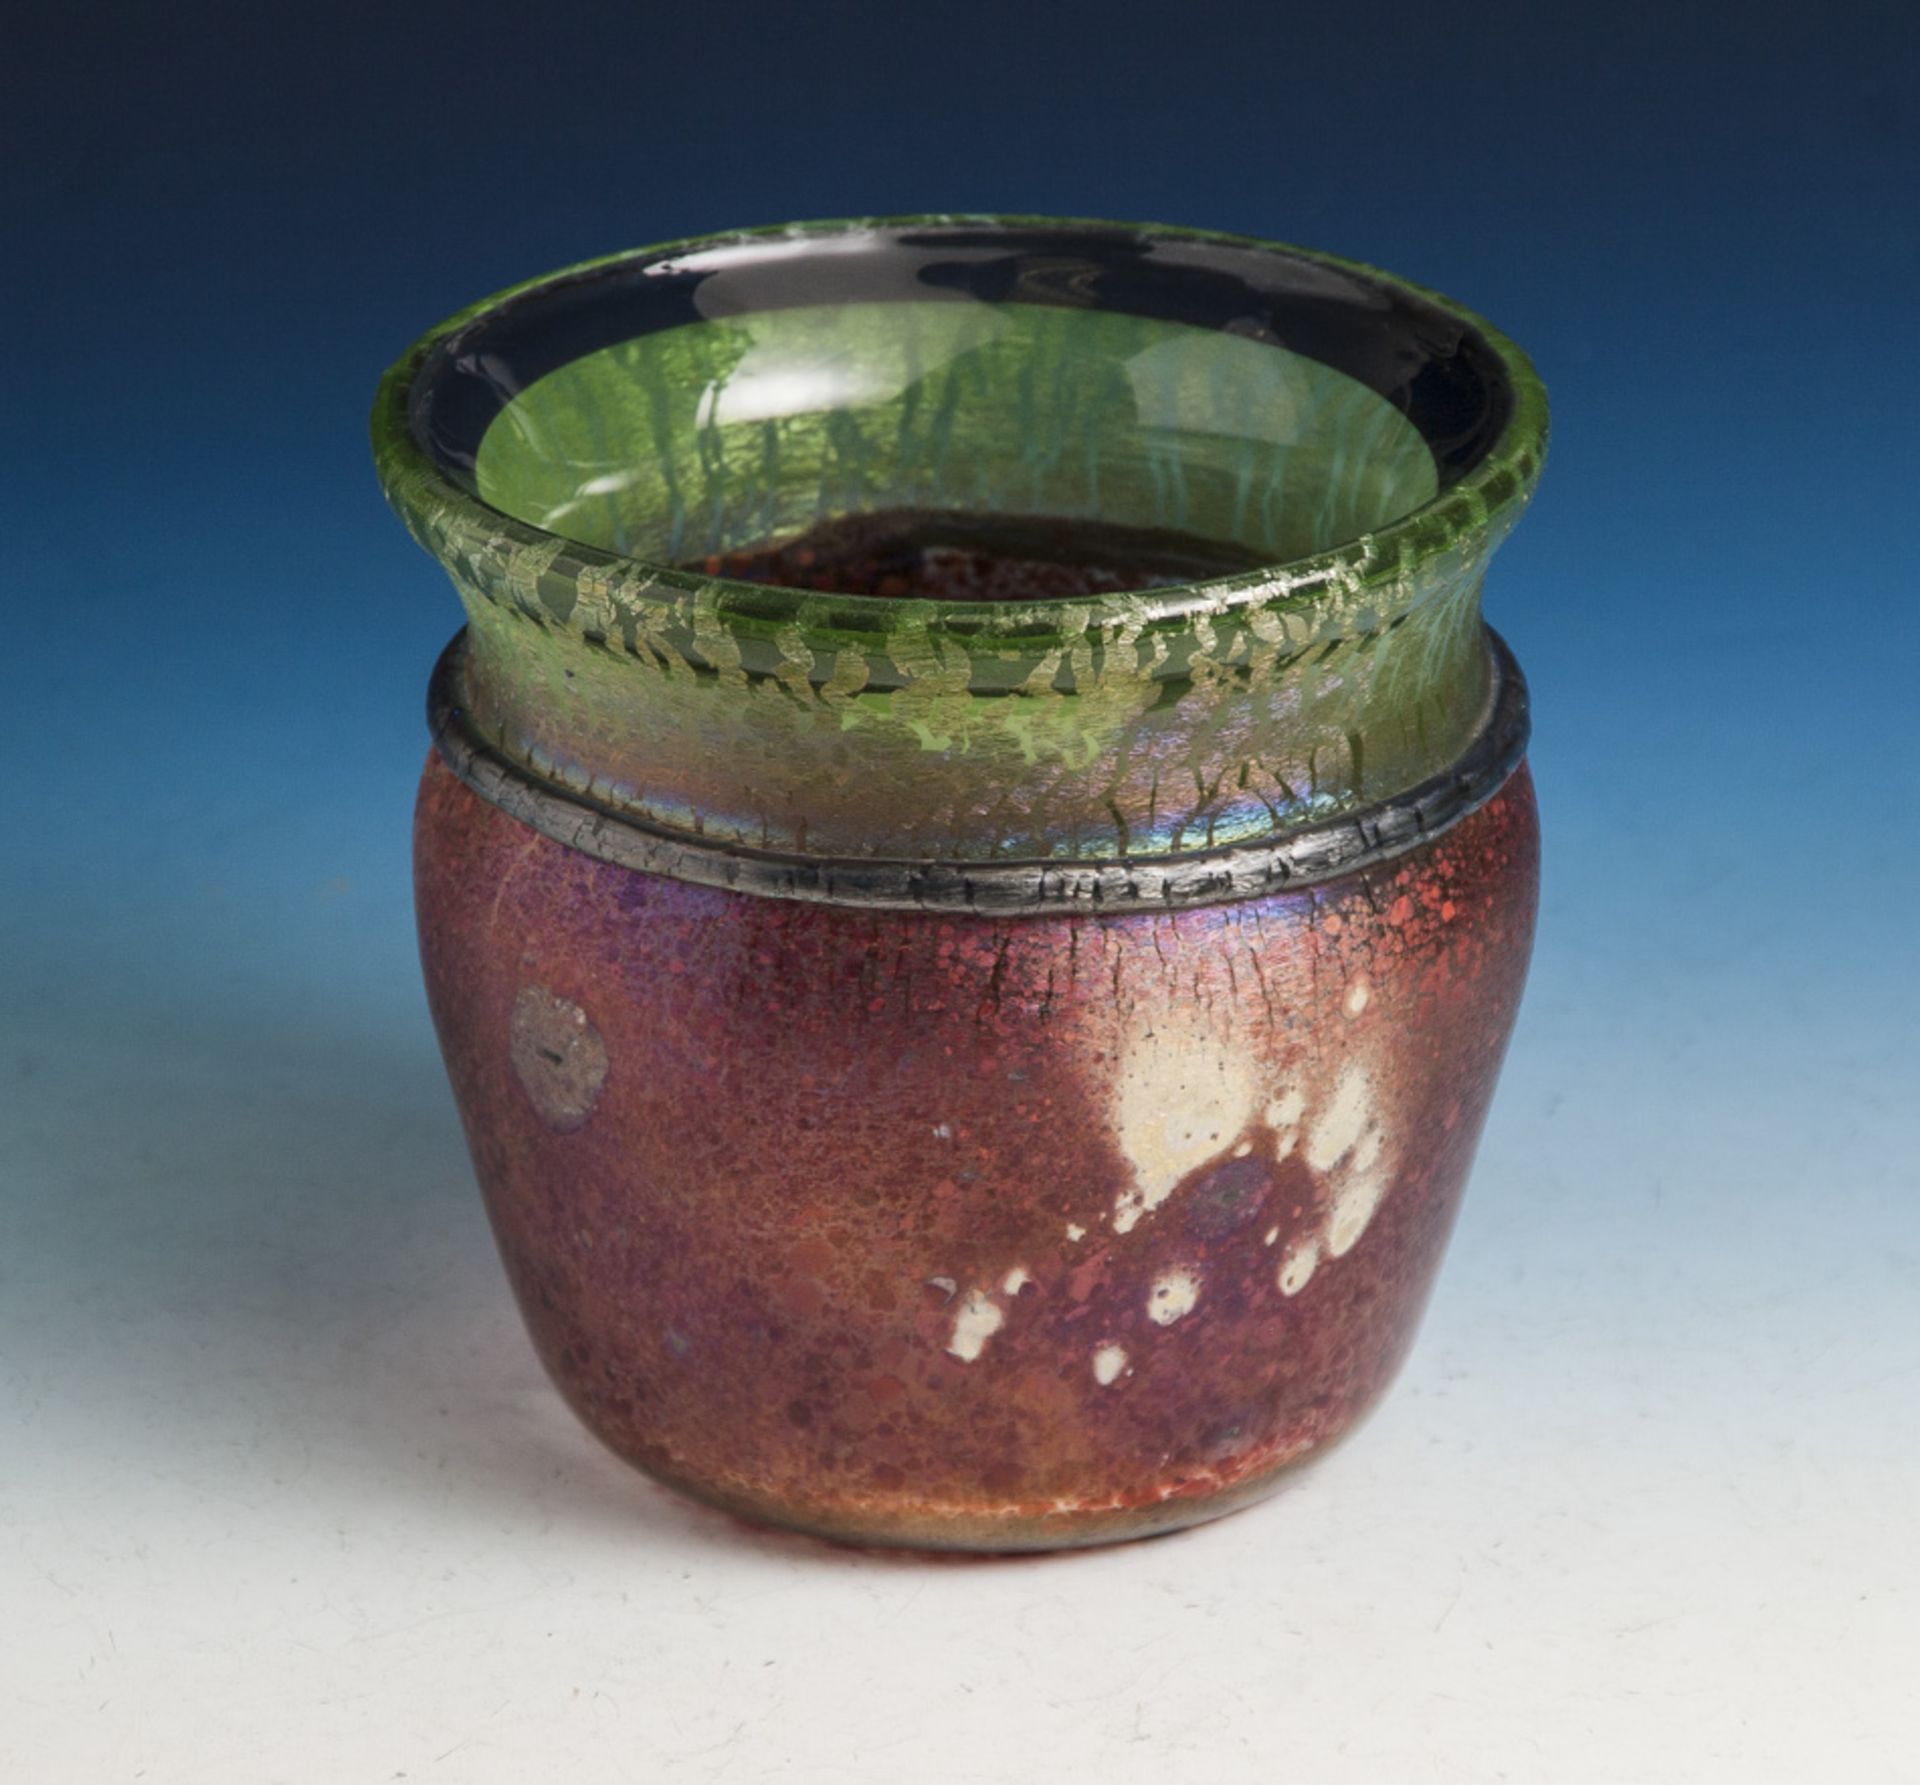 Vase, farbloses Glas, der Mündungsrand grün überfangen, der Korpus mit grün bzw. roterKrakelee-